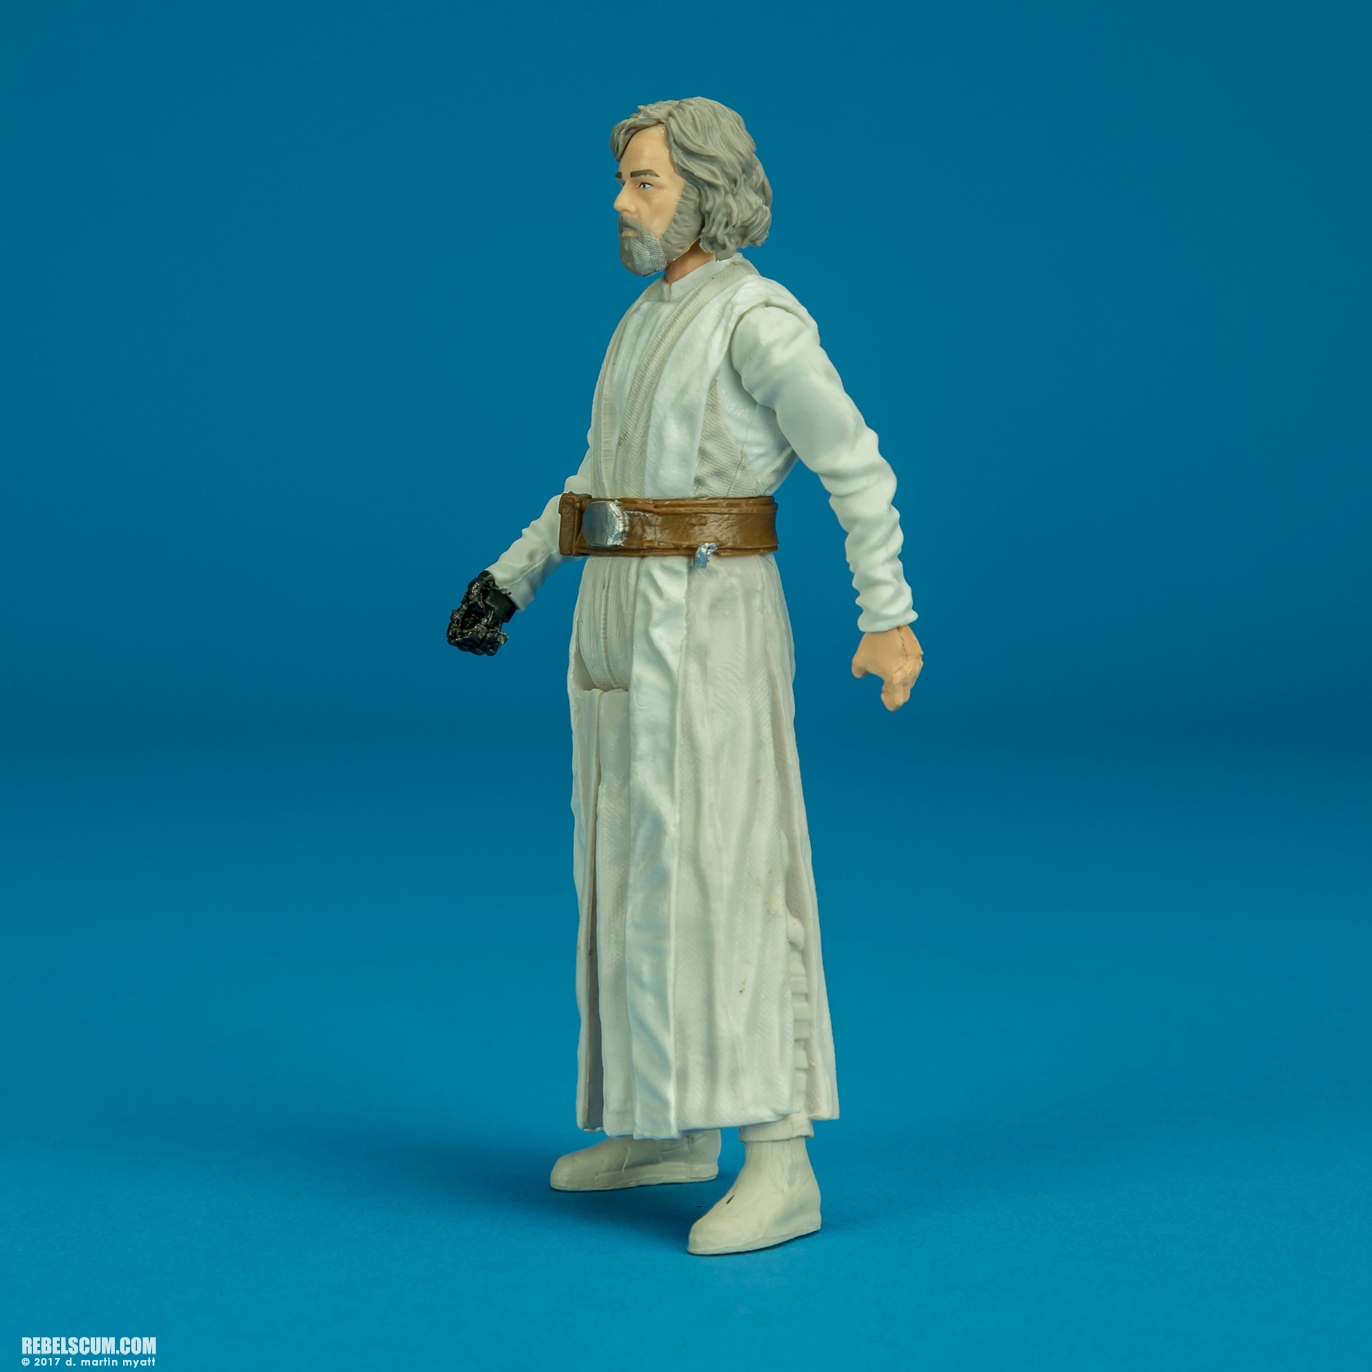 The-Last-Jedi-Star-Wars-Universe-Luke-Skywalker-Hasbro-007.jpg